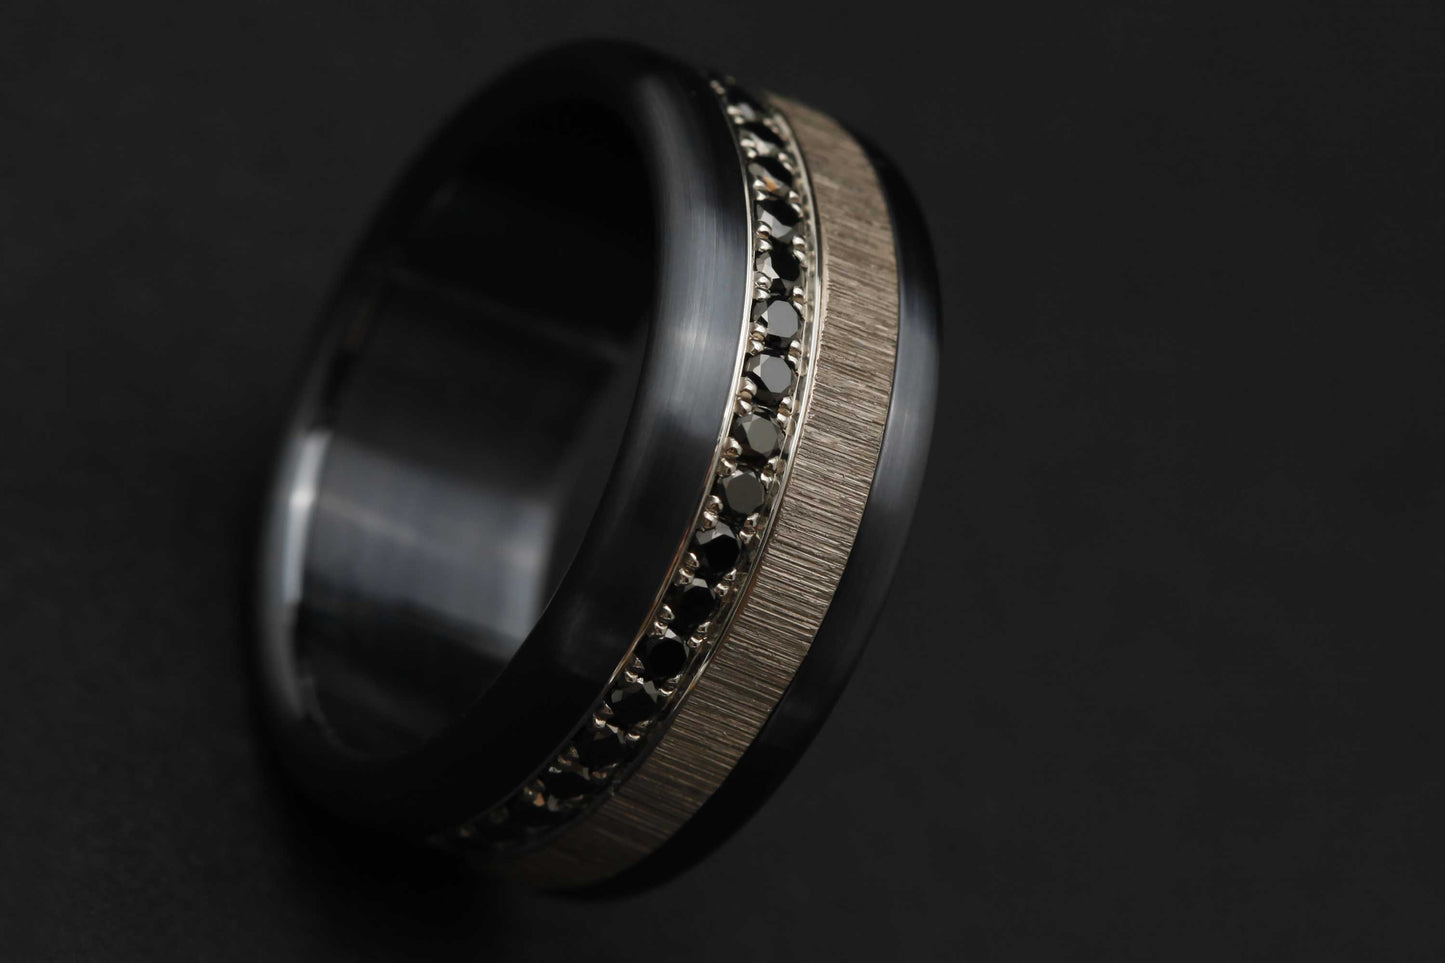 Medium Addon aus Stahl für personalisierbaren mood Ring mit schwarzen 1,6mm Diamanten vollständig besetzt